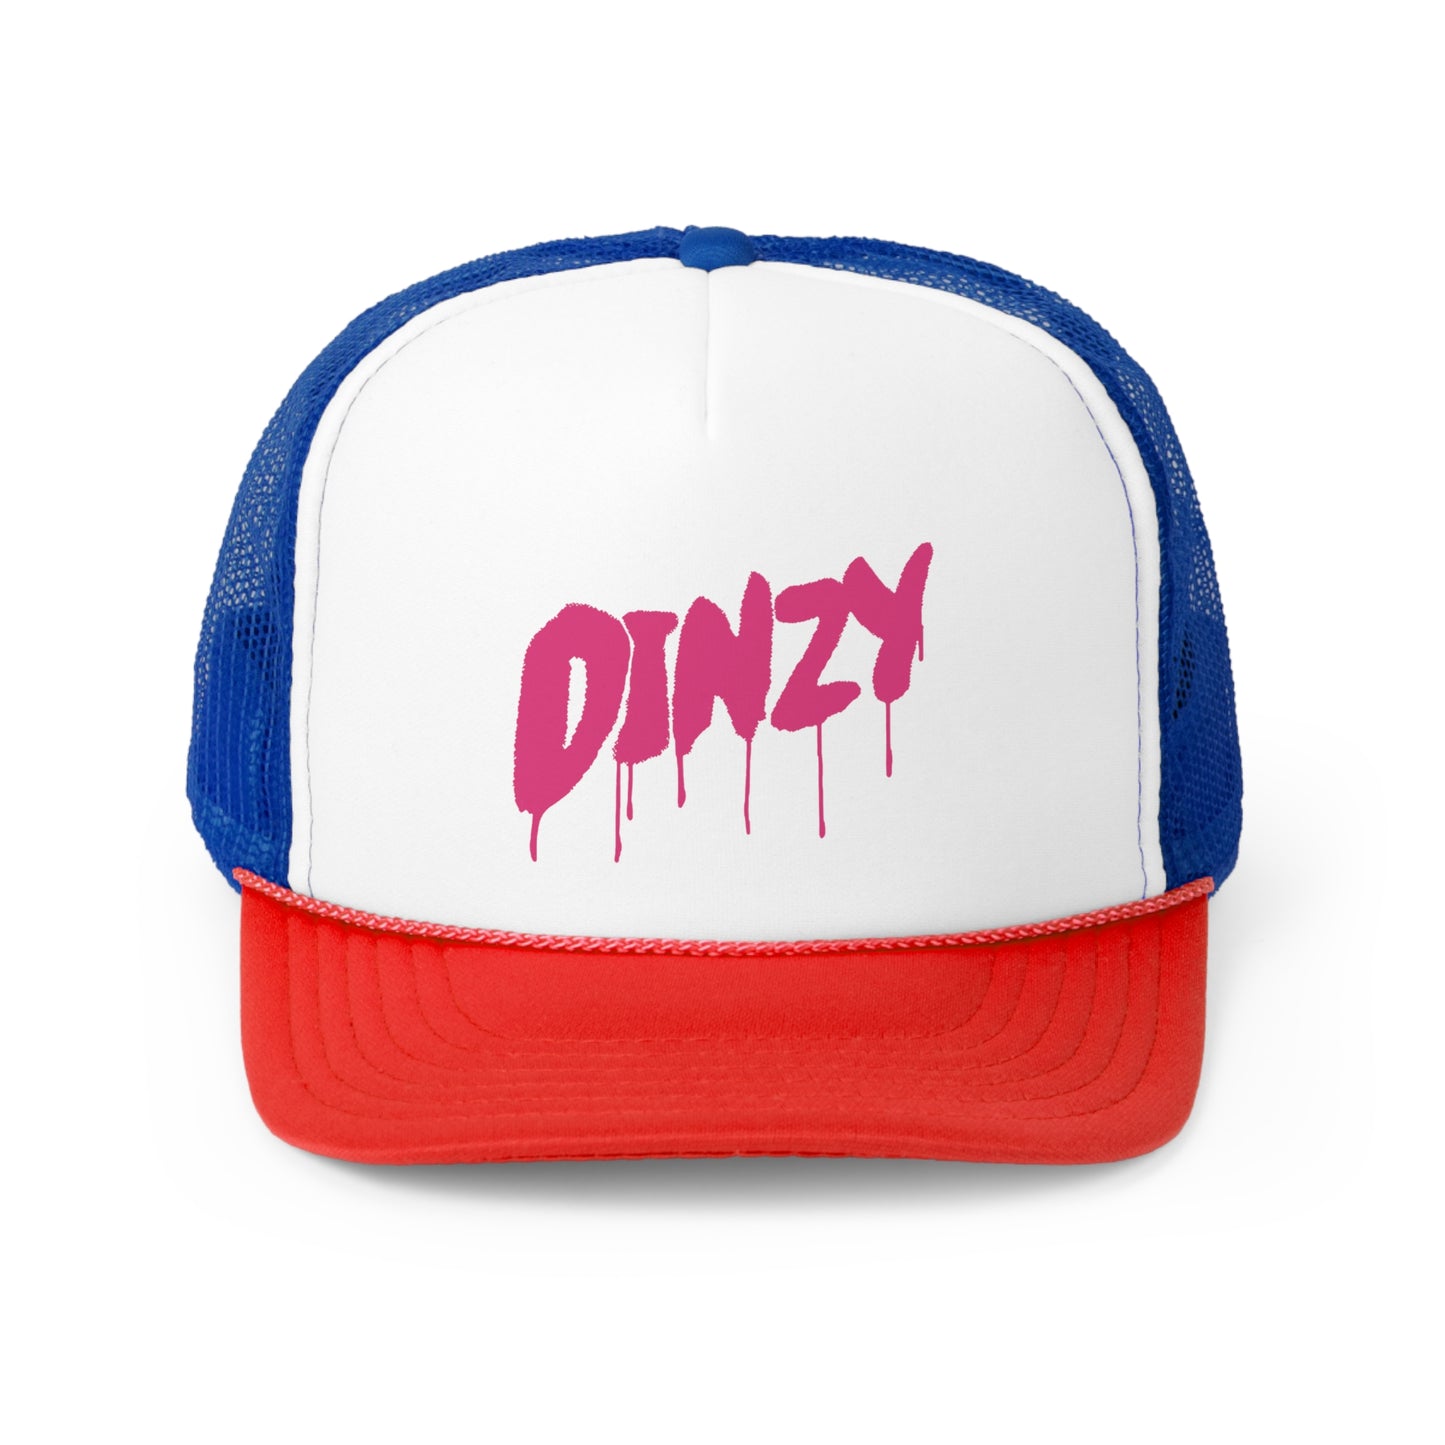 a.Dinzy Cap